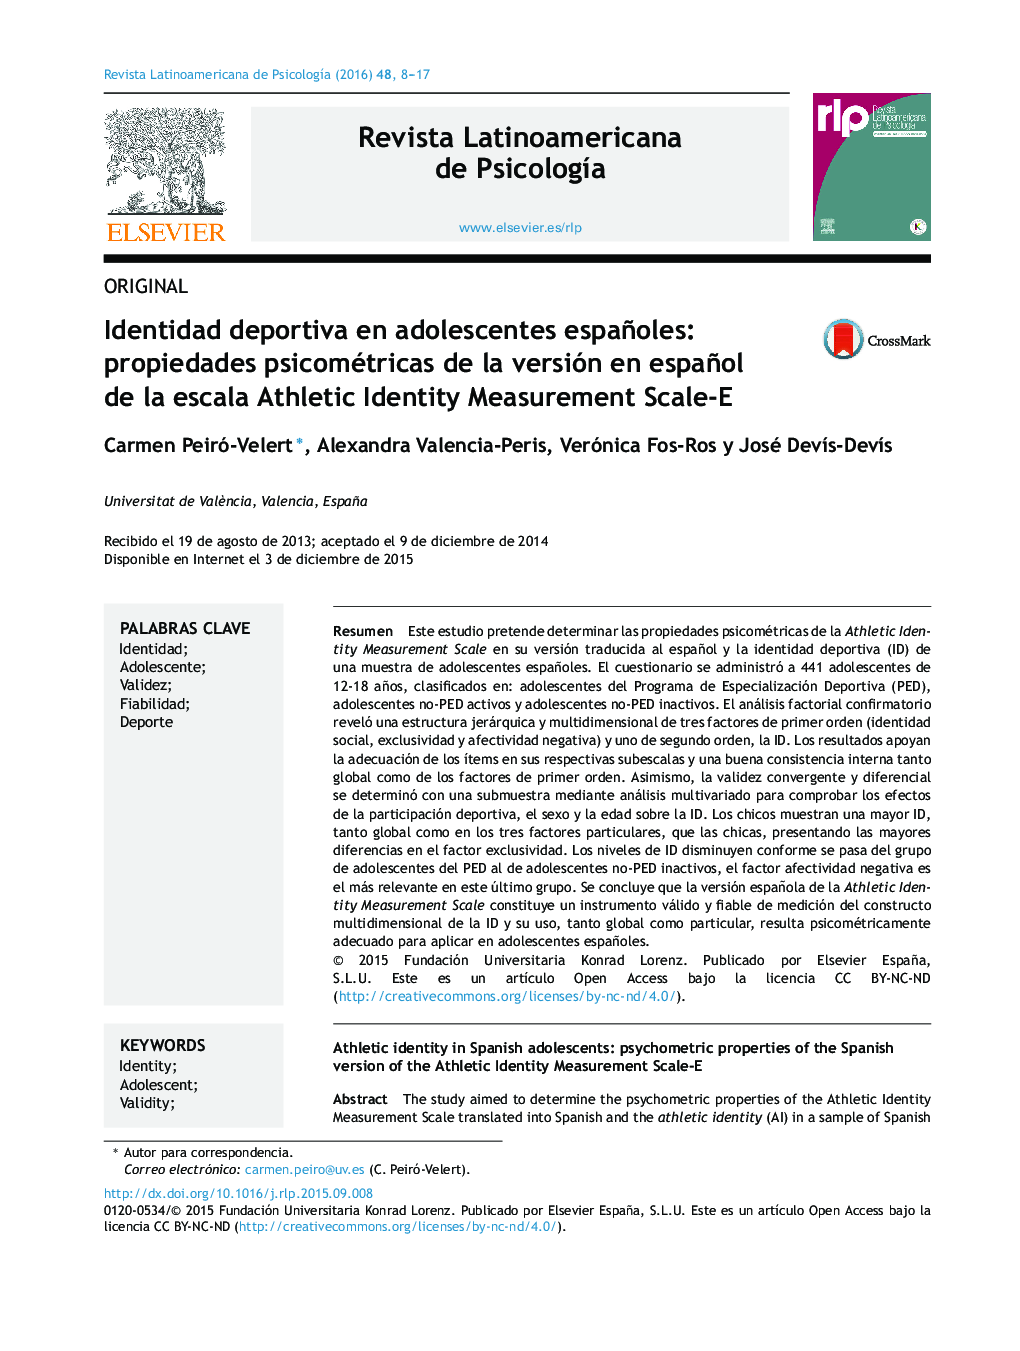 Identidad deportiva en adolescentes españoles: propiedades psicométricas de la versión en español de la escala Athletic Identity Measurement Scale-E